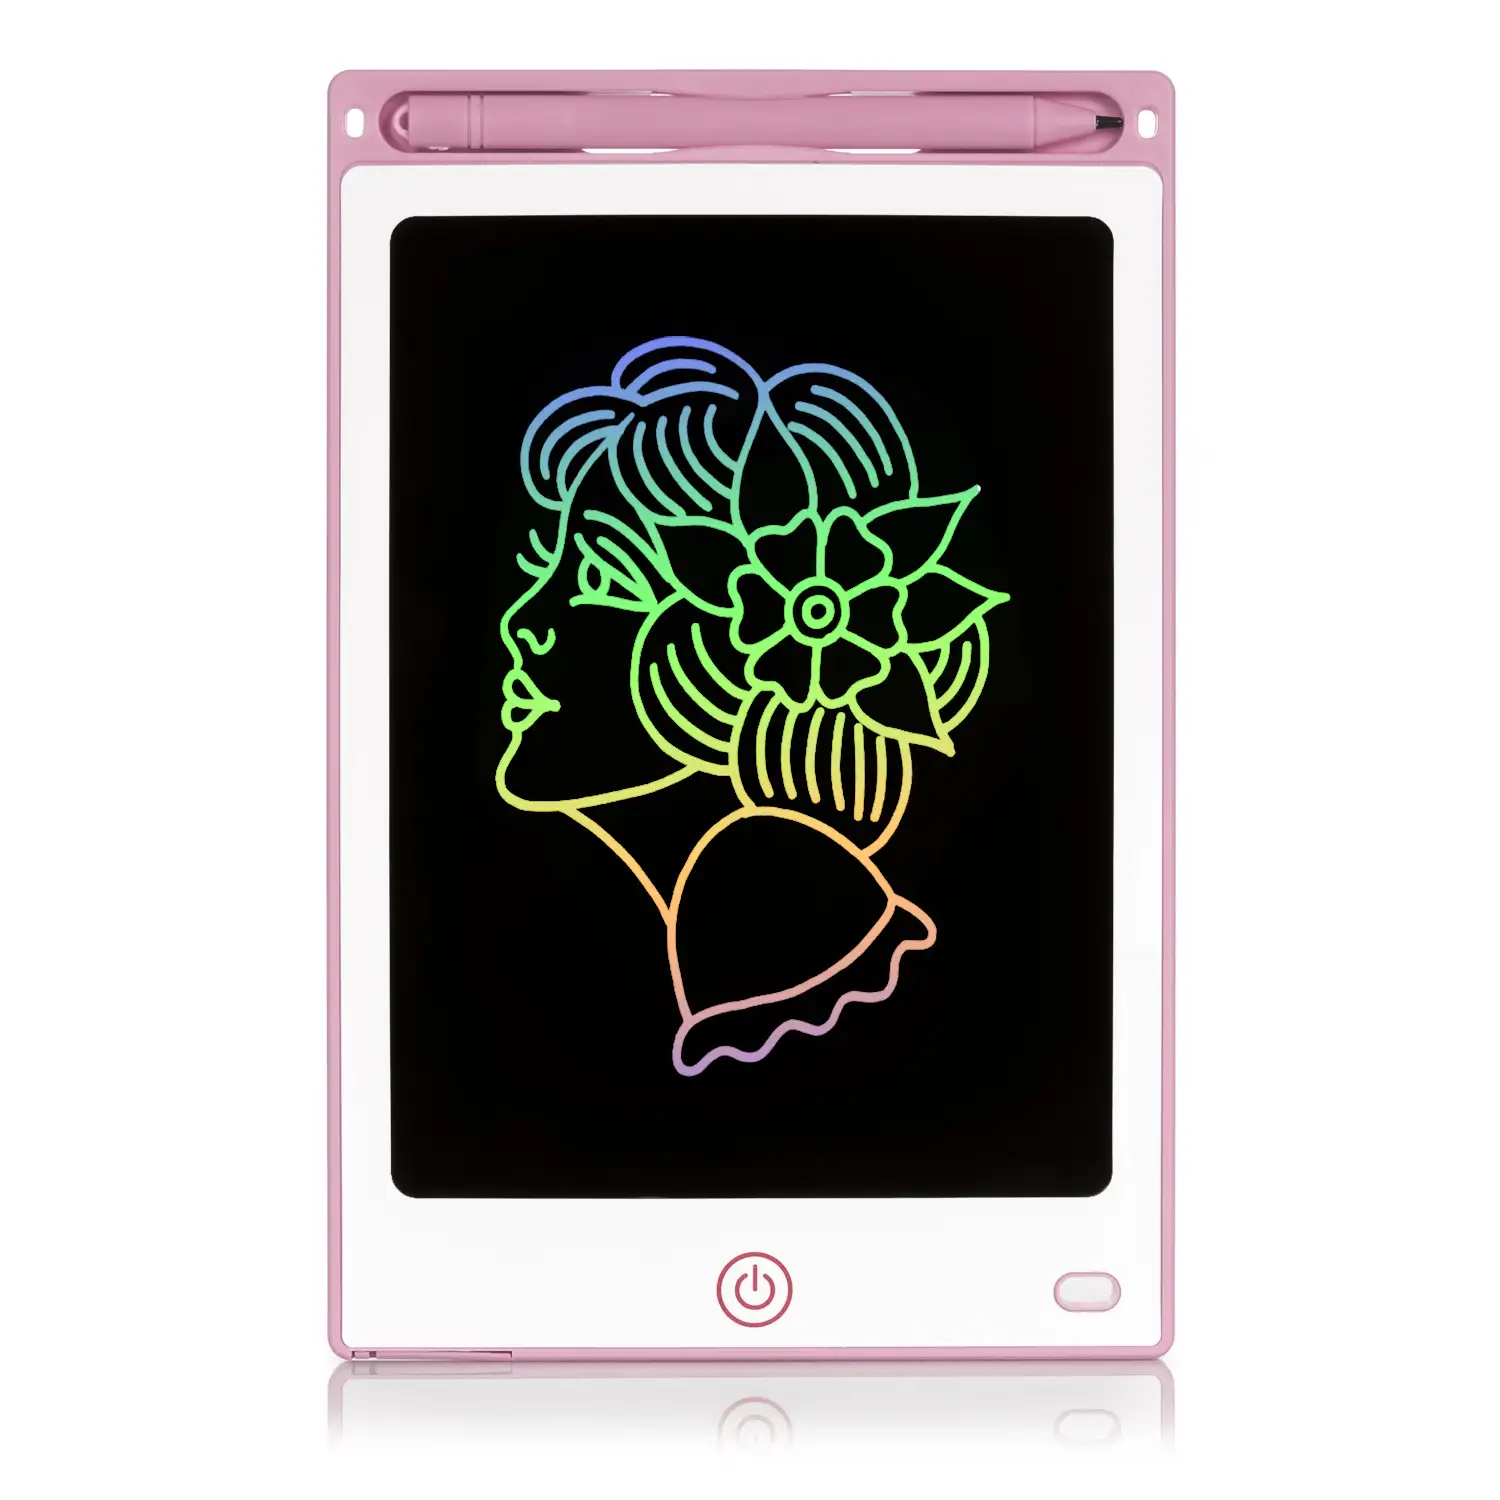 Tableta LCD portátil de dibujo y escritura de 8,5 pulgadas. Pantalla multicolor. Bloqueo de borrado.